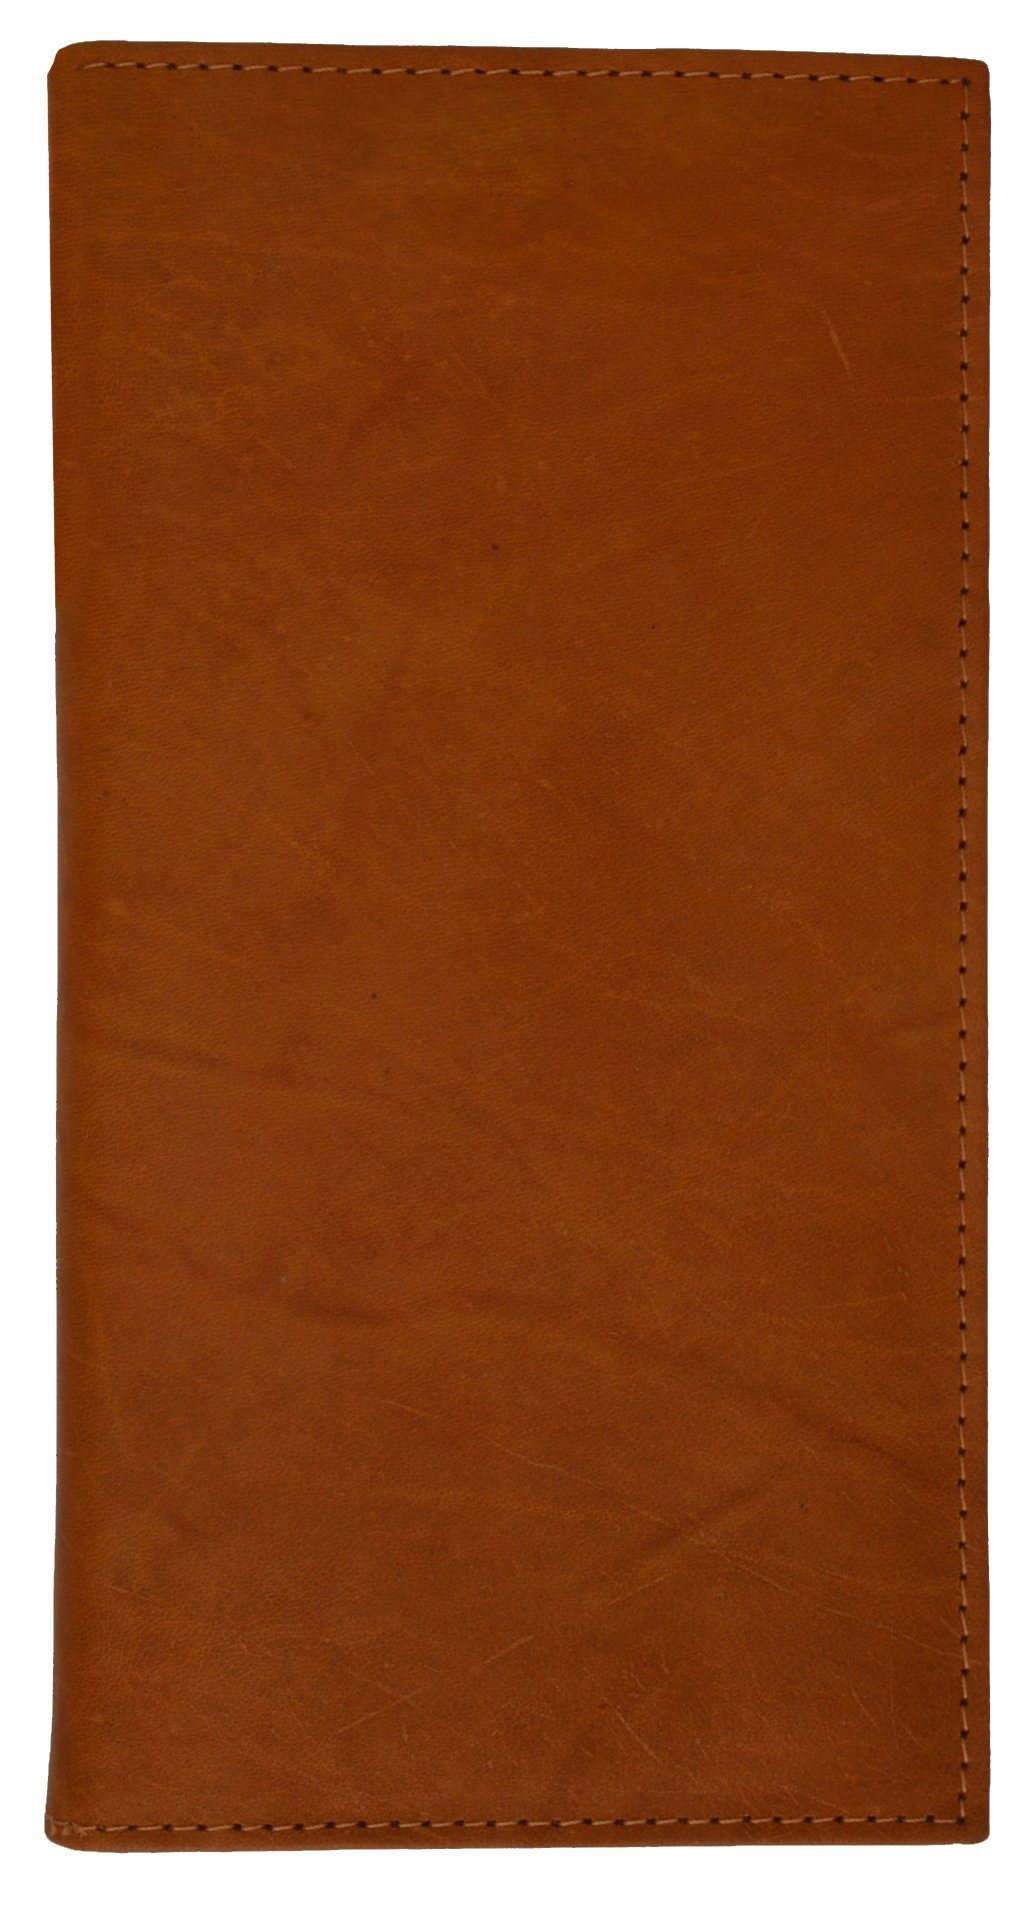 Leather Card Holder Wallet – WholesaleLeatherSupplier.com